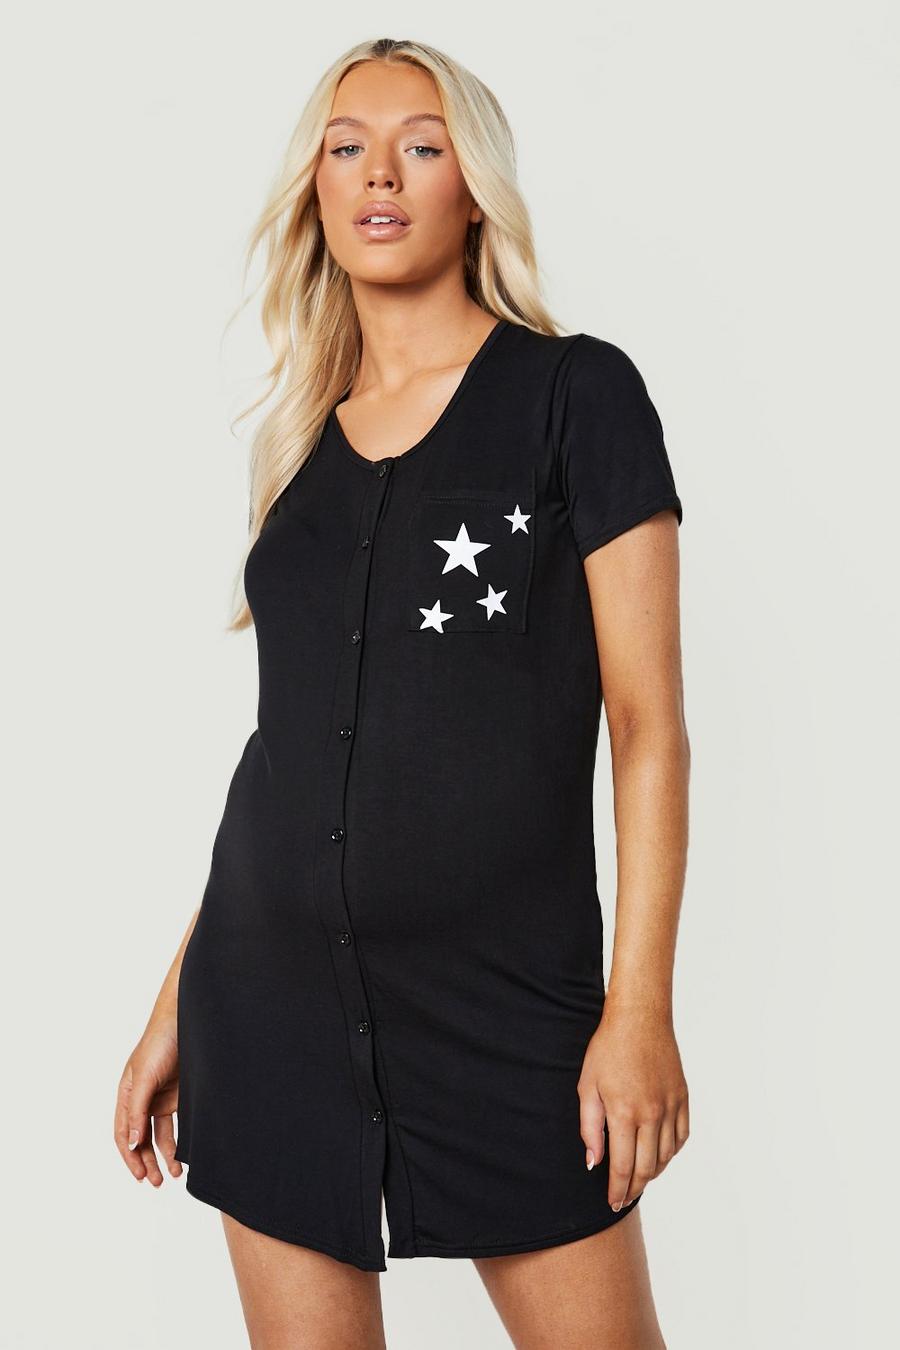 שחור negro כותונת לילה עם הדפס כוכב באזור הכיס וכפתורים, להיריון